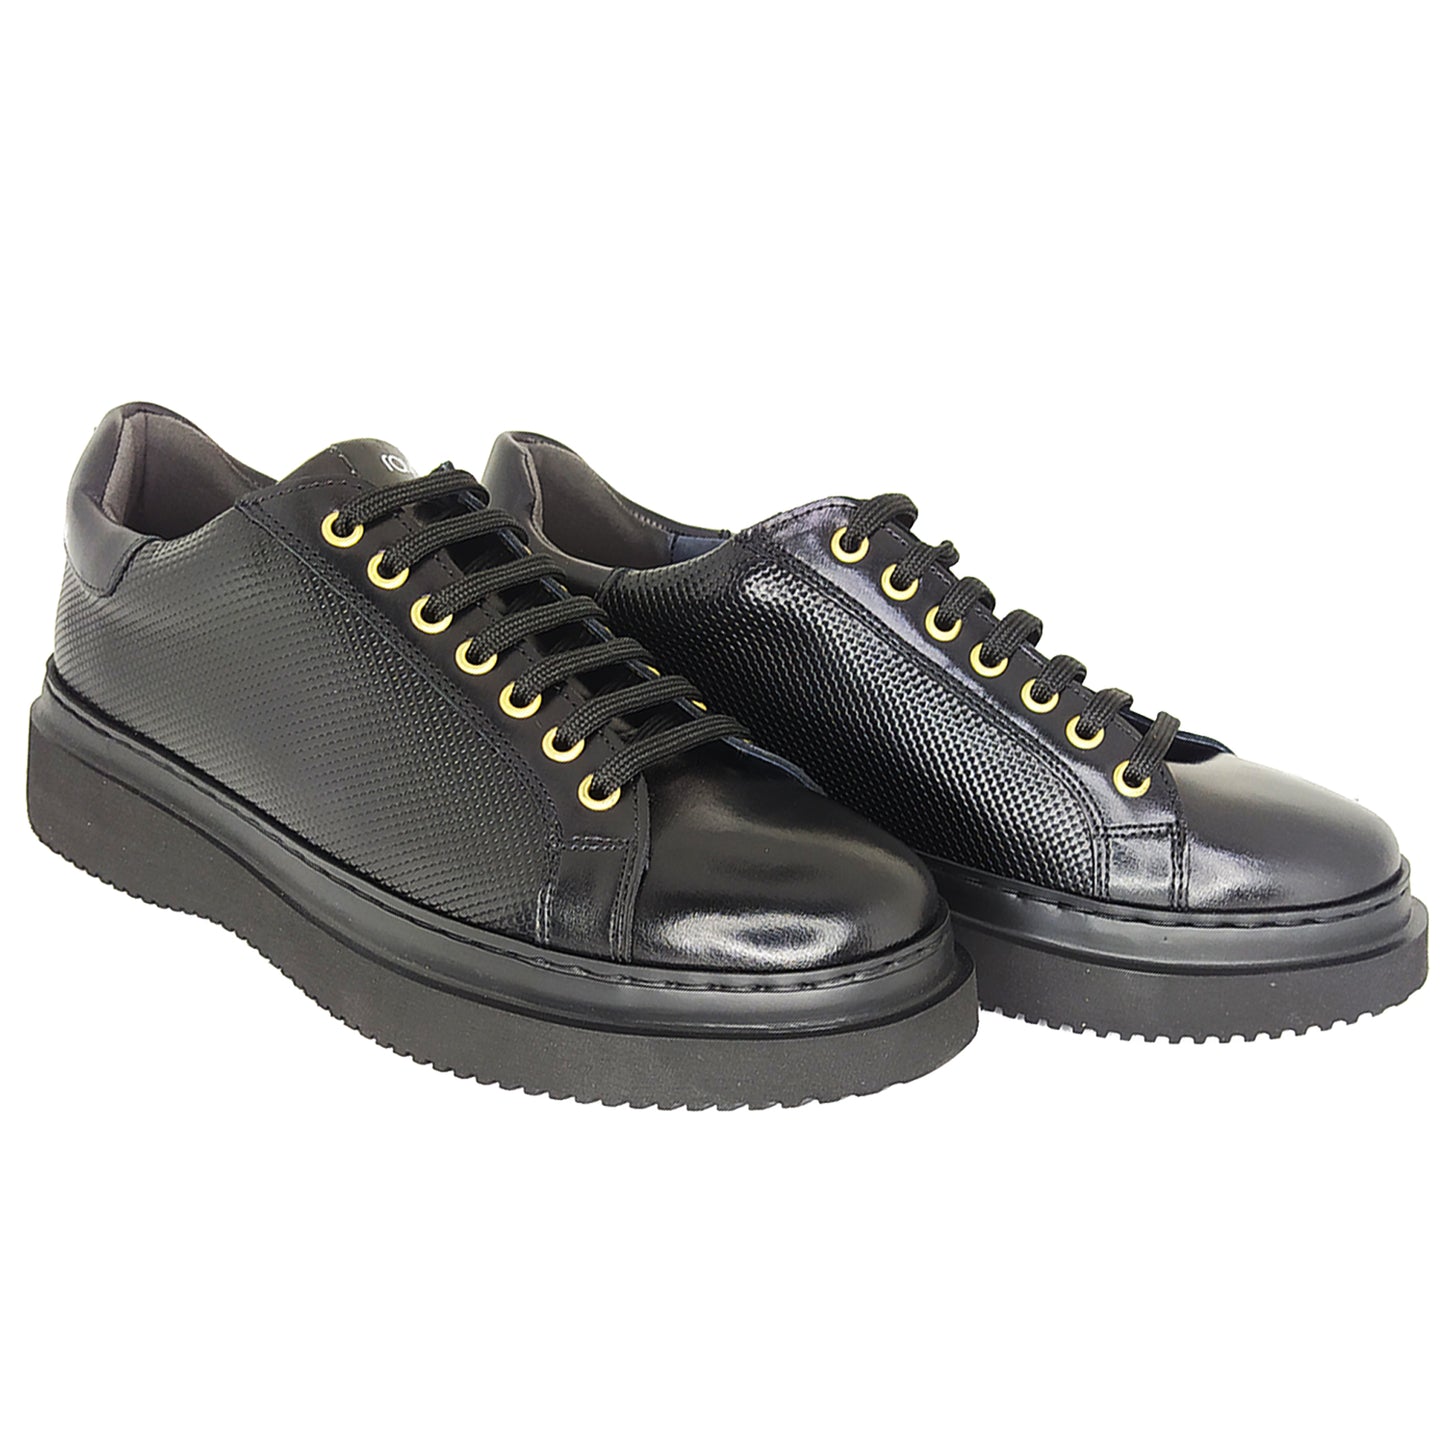 Χειροποίητα Δερμάτινα Sneakers Παπούτσια Μαύρα 823 BLACK-2